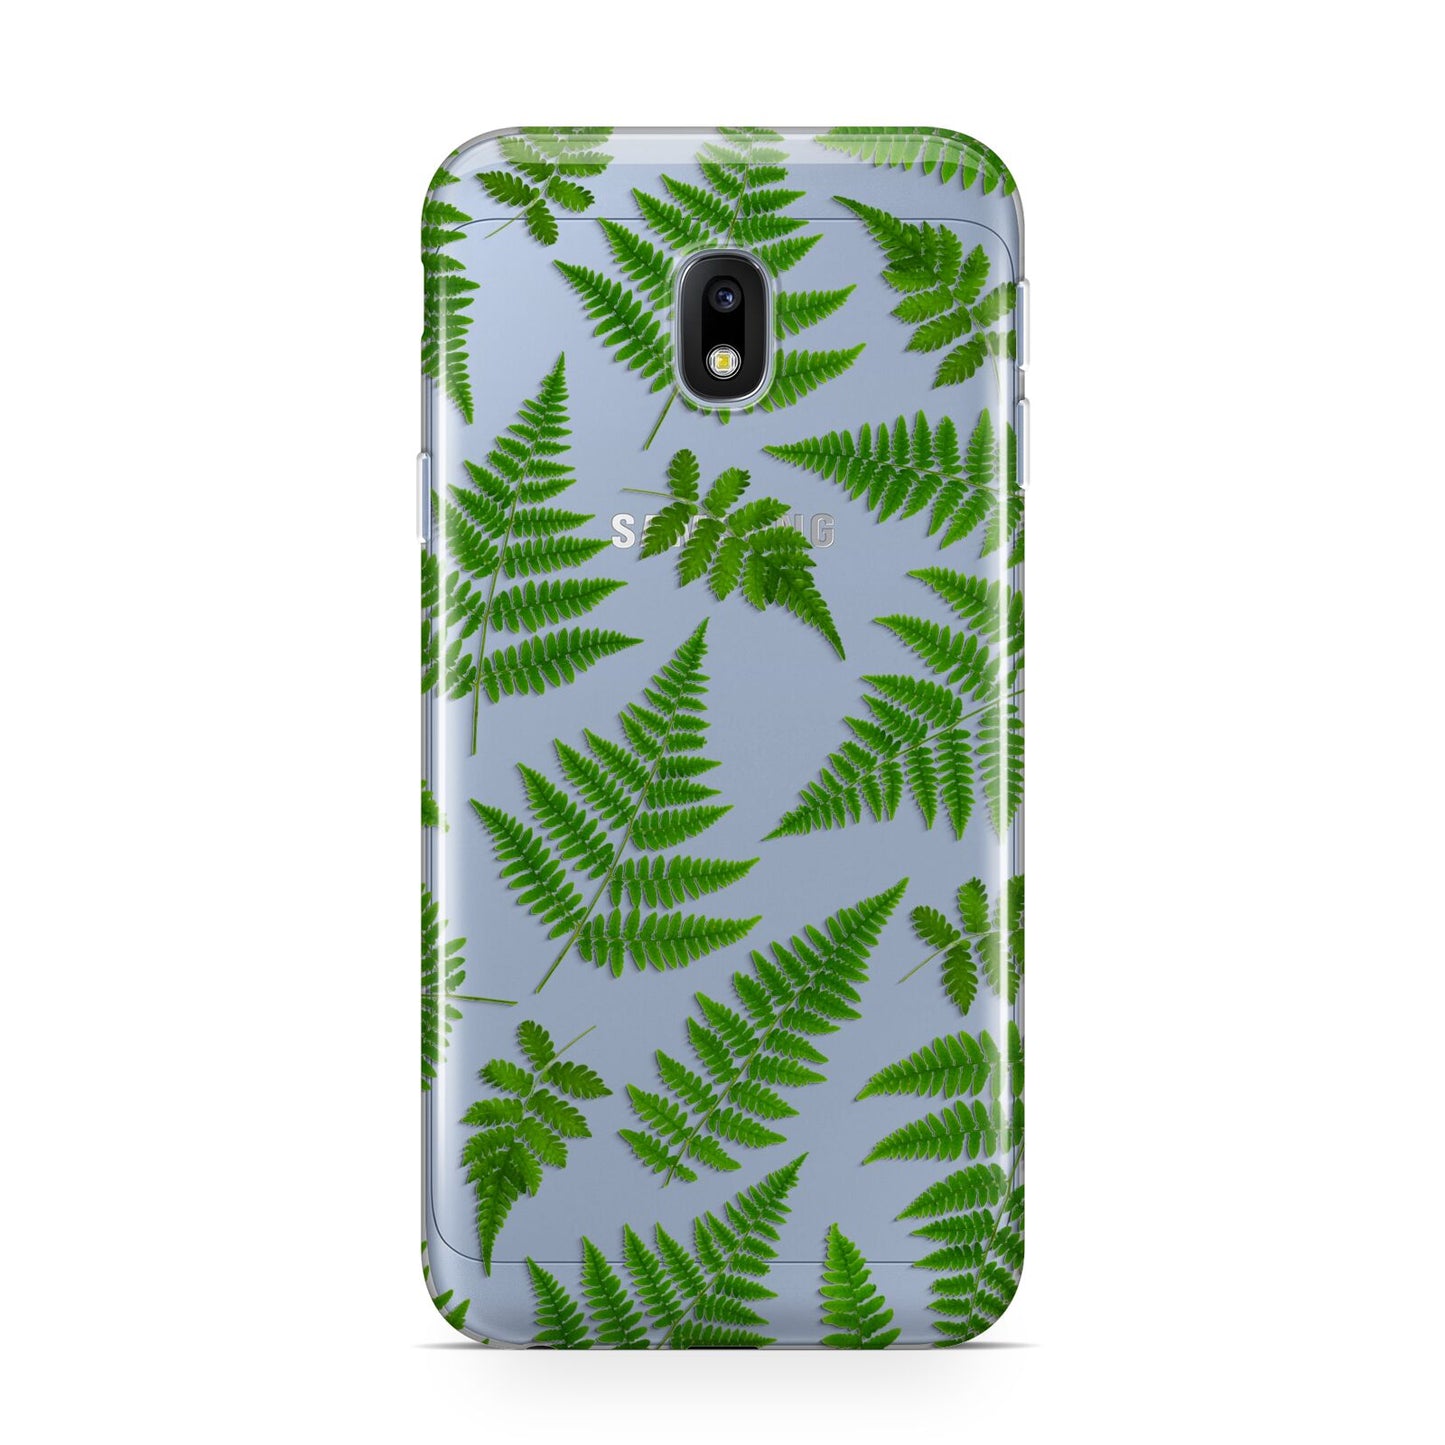 Fern Leaf Samsung Galaxy J3 2017 Case